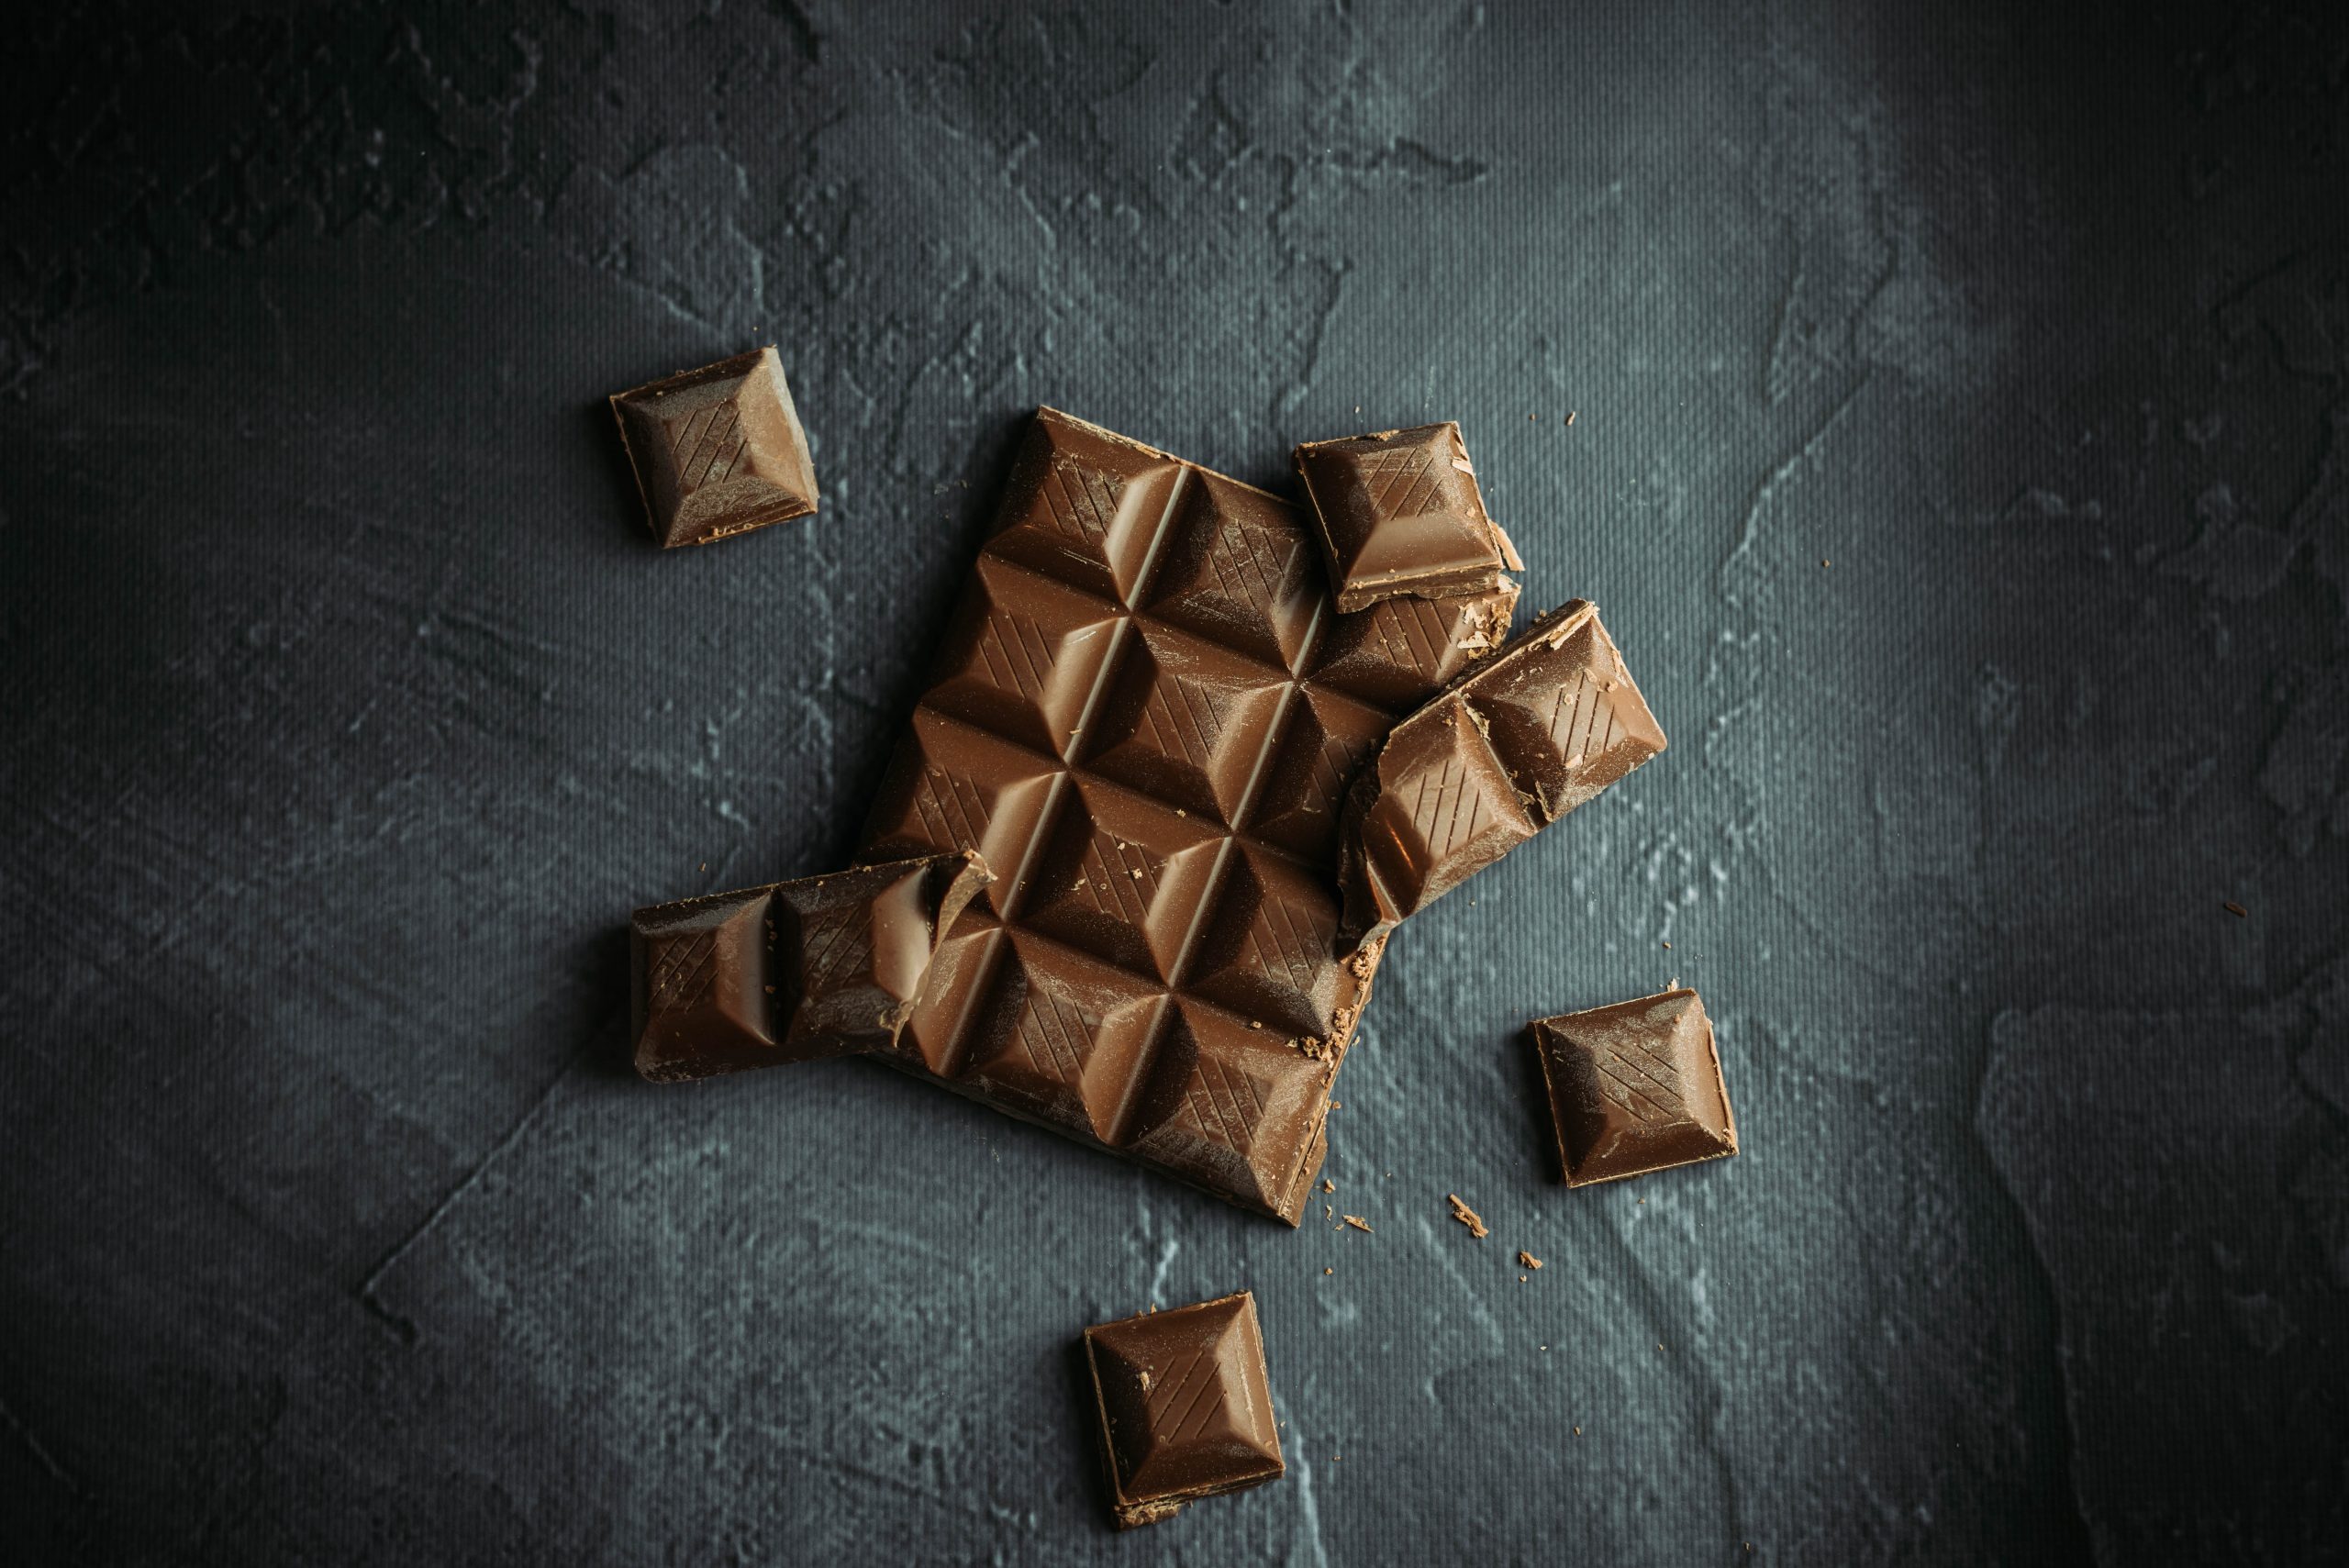  Att drömma om choklad kommer att avslöja något viktigt i ditt liv